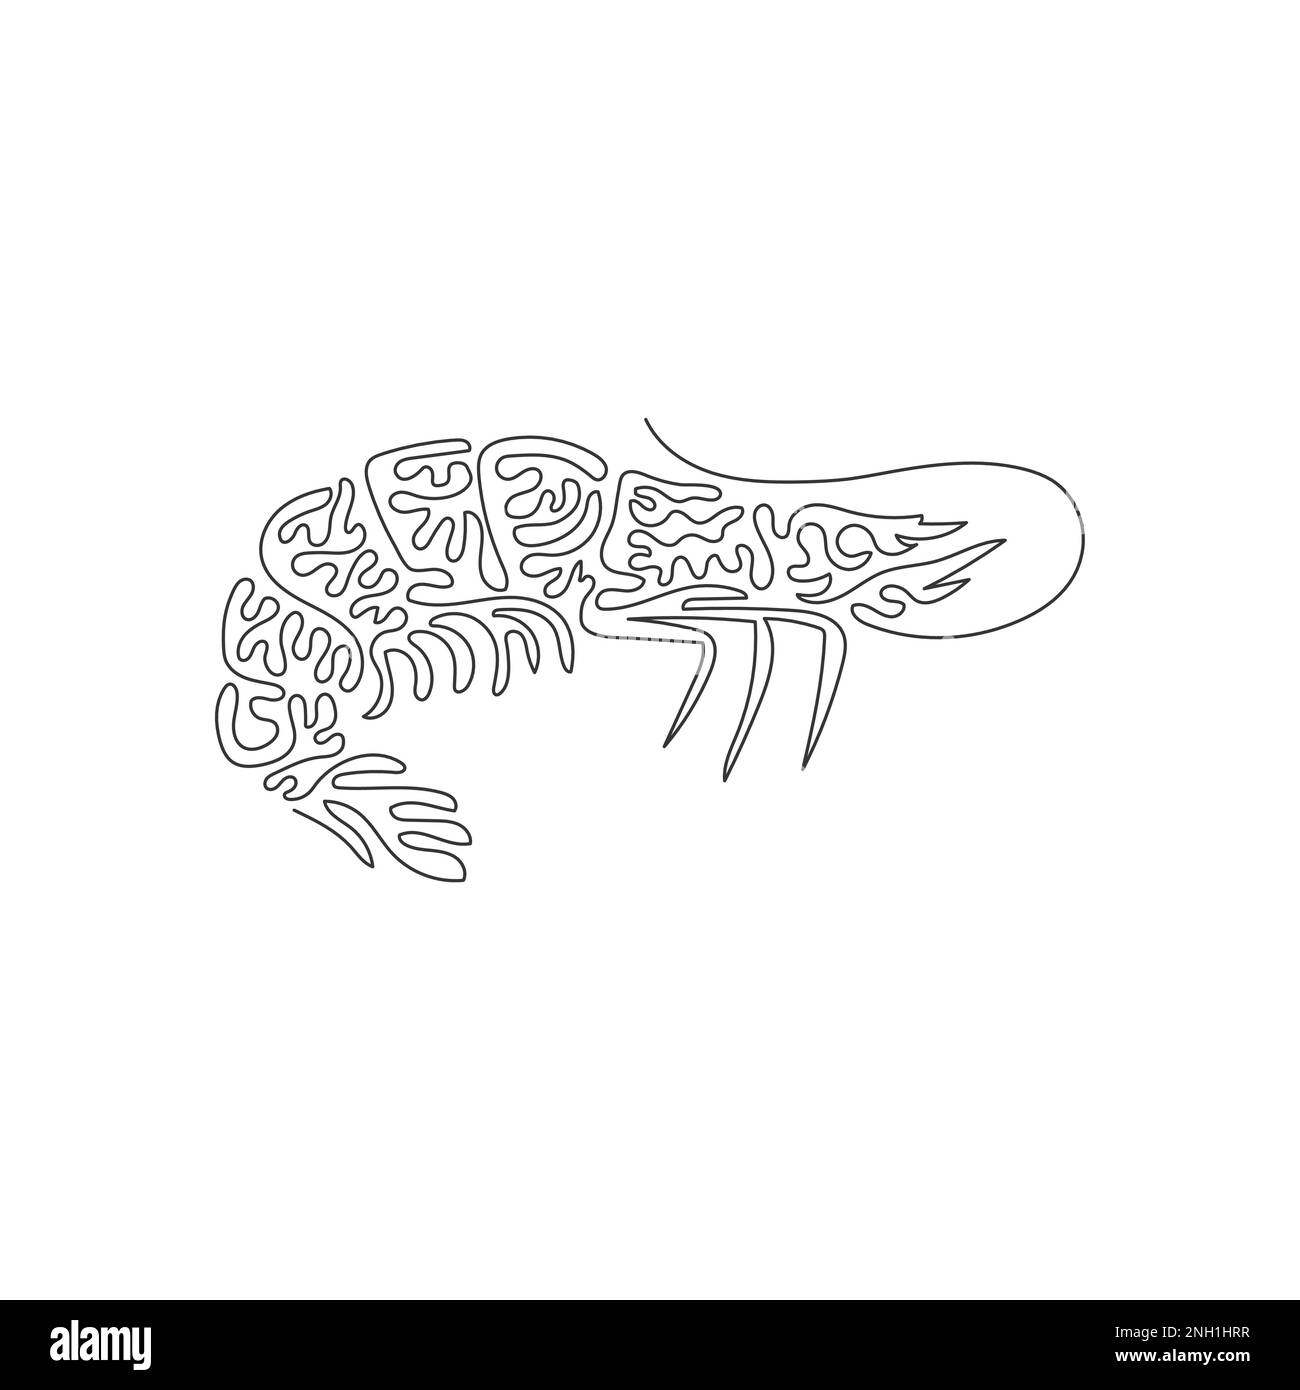 Un seul dessin d'une ligne de mignons crevettes art abstrait Dessin en ligne continue dessin graphique dessin illustration vectorielle de la queue de crevette comme un ventilateur Illustration de Vecteur